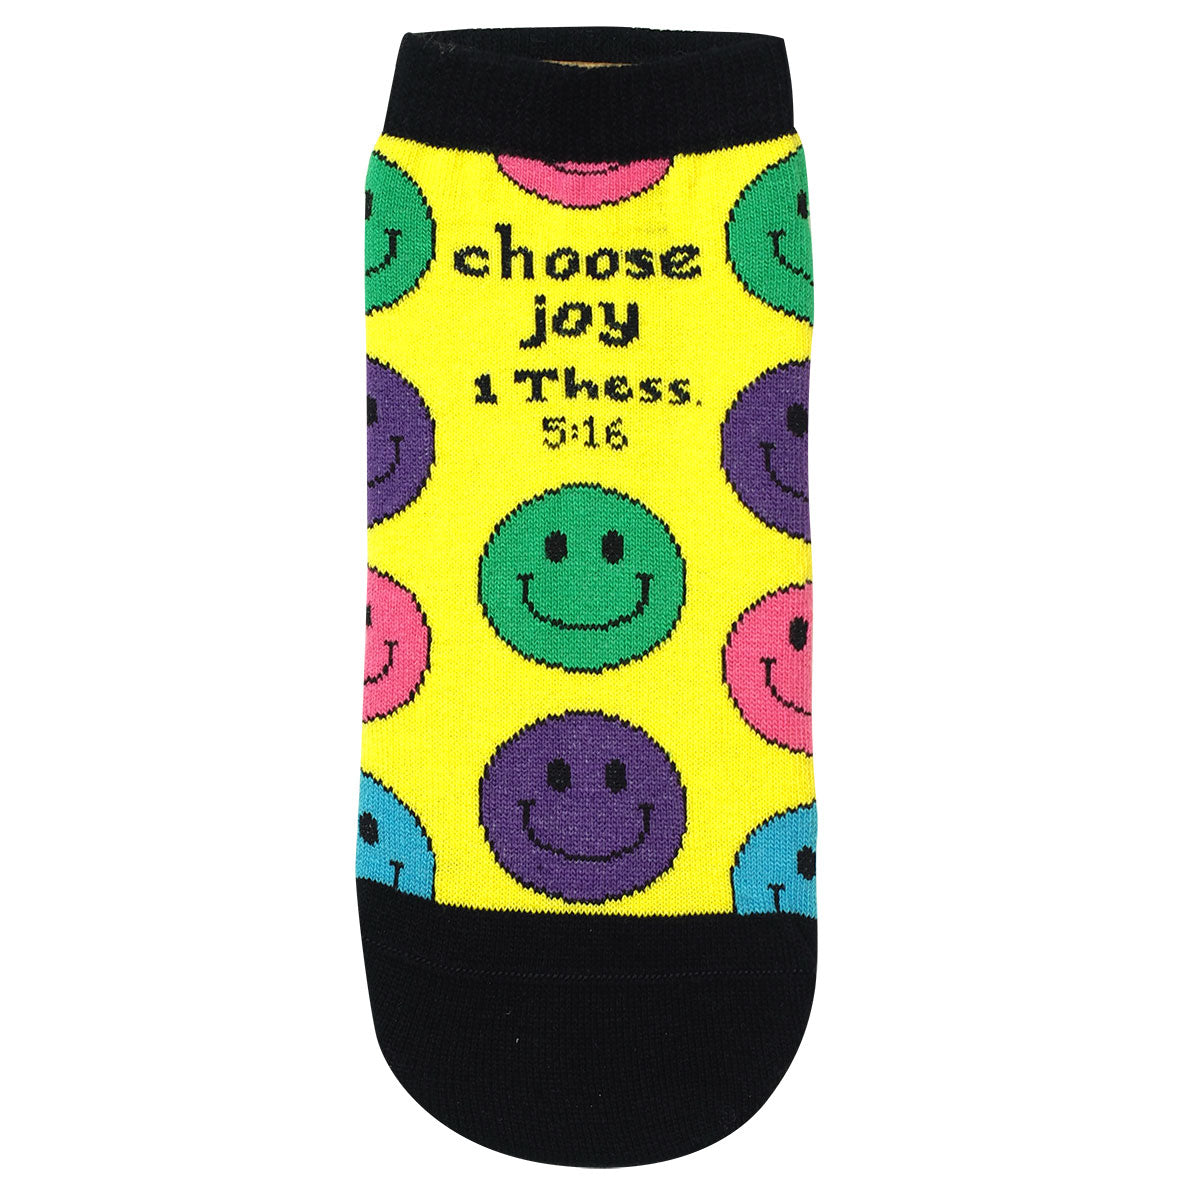 Kerusso Ankle Socks Choose Joy